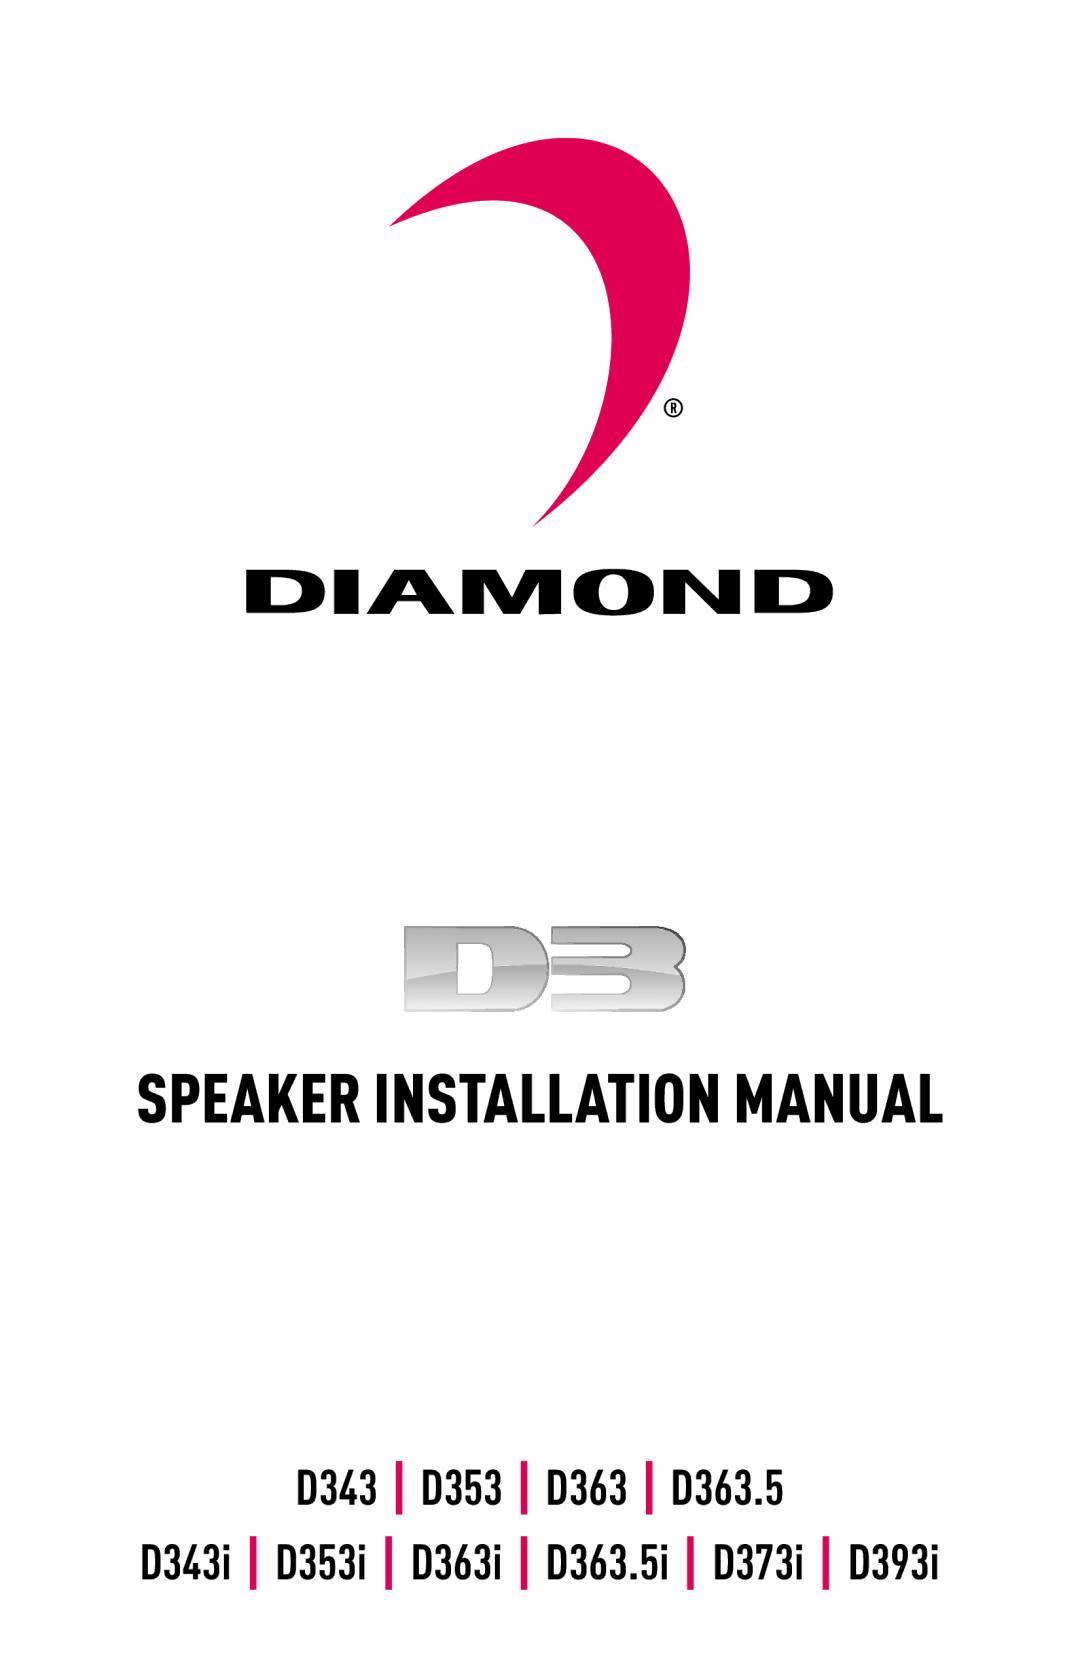 Diamond D373I, D393I, D363.5I, D343I, D363I, D353I installation manual Speaker Installation Manual 